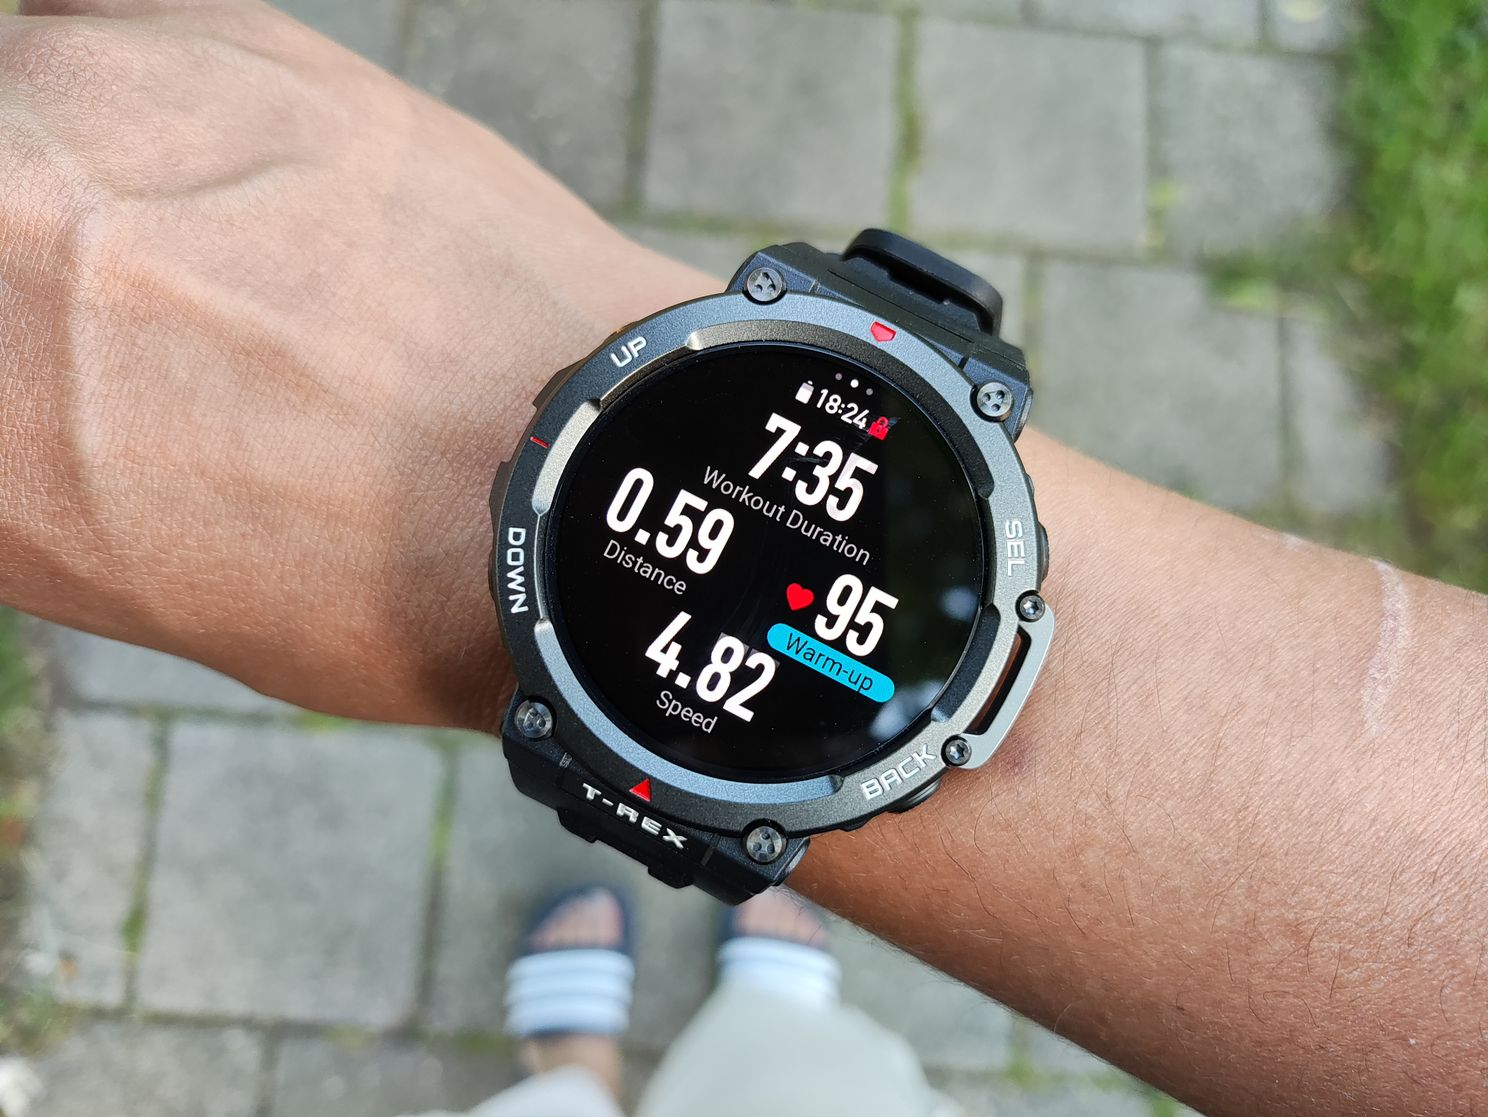 Amazfit T-Rex 2 review: is deze robuuste smartwatch klaar voor het grote publiek?